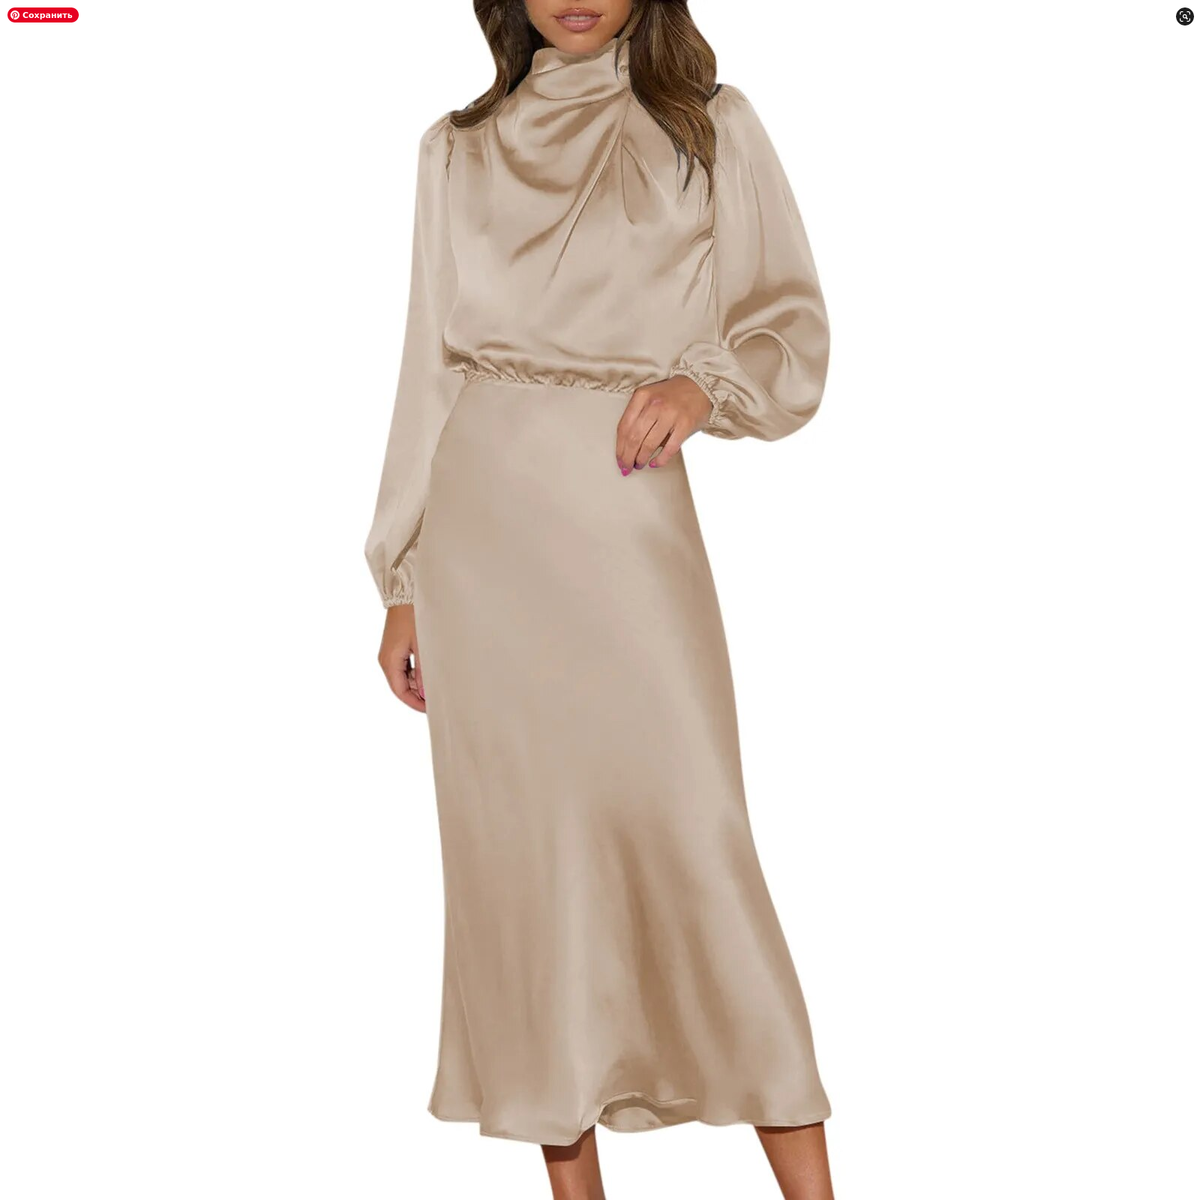 Вечернее платье с длинным рукавом - купить в Украине - интернет-магазин Leomirra - Киев